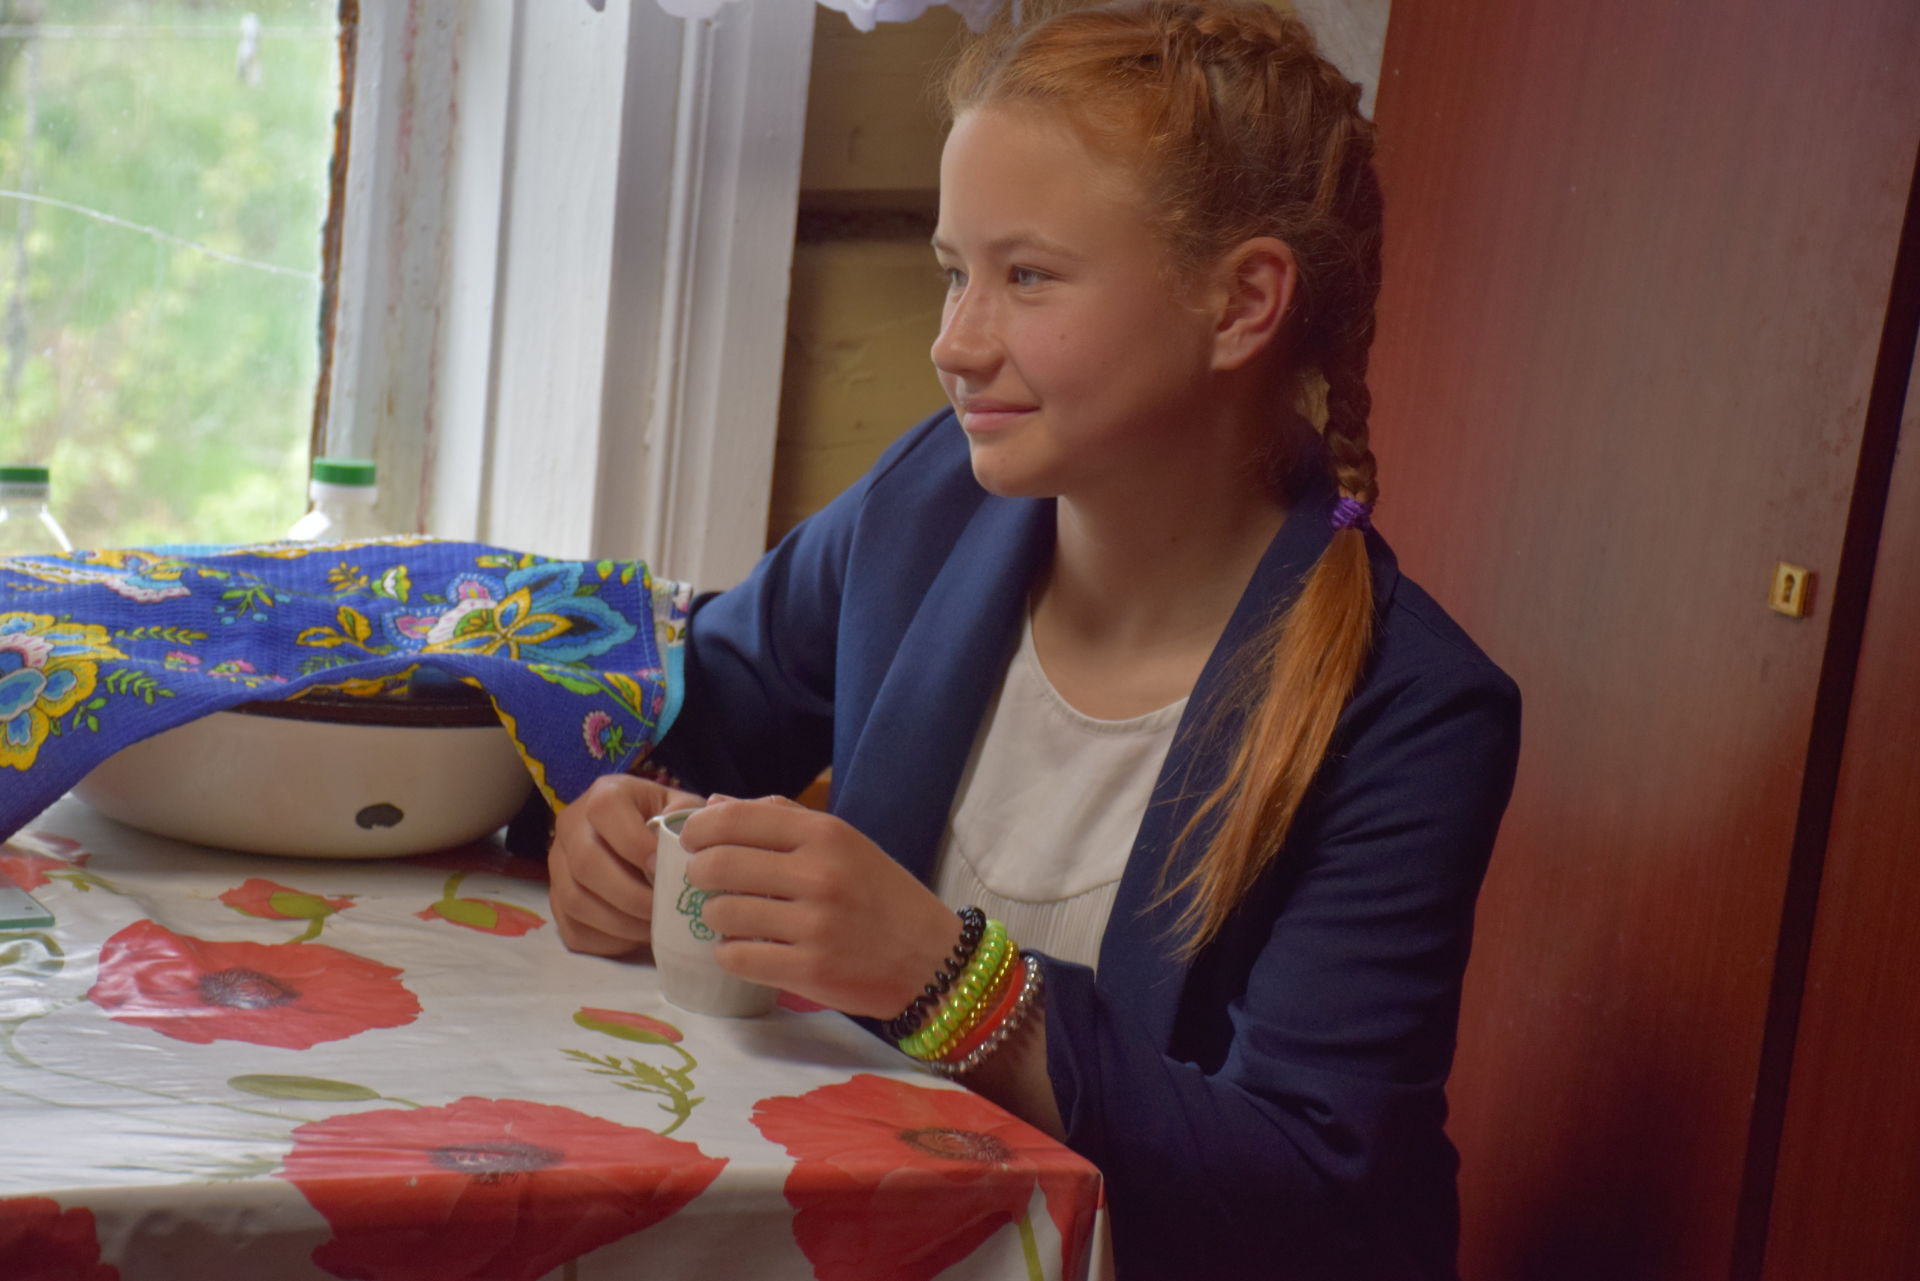 Село Бурметьево приютило у себя семью из Донецкой Народной Республики